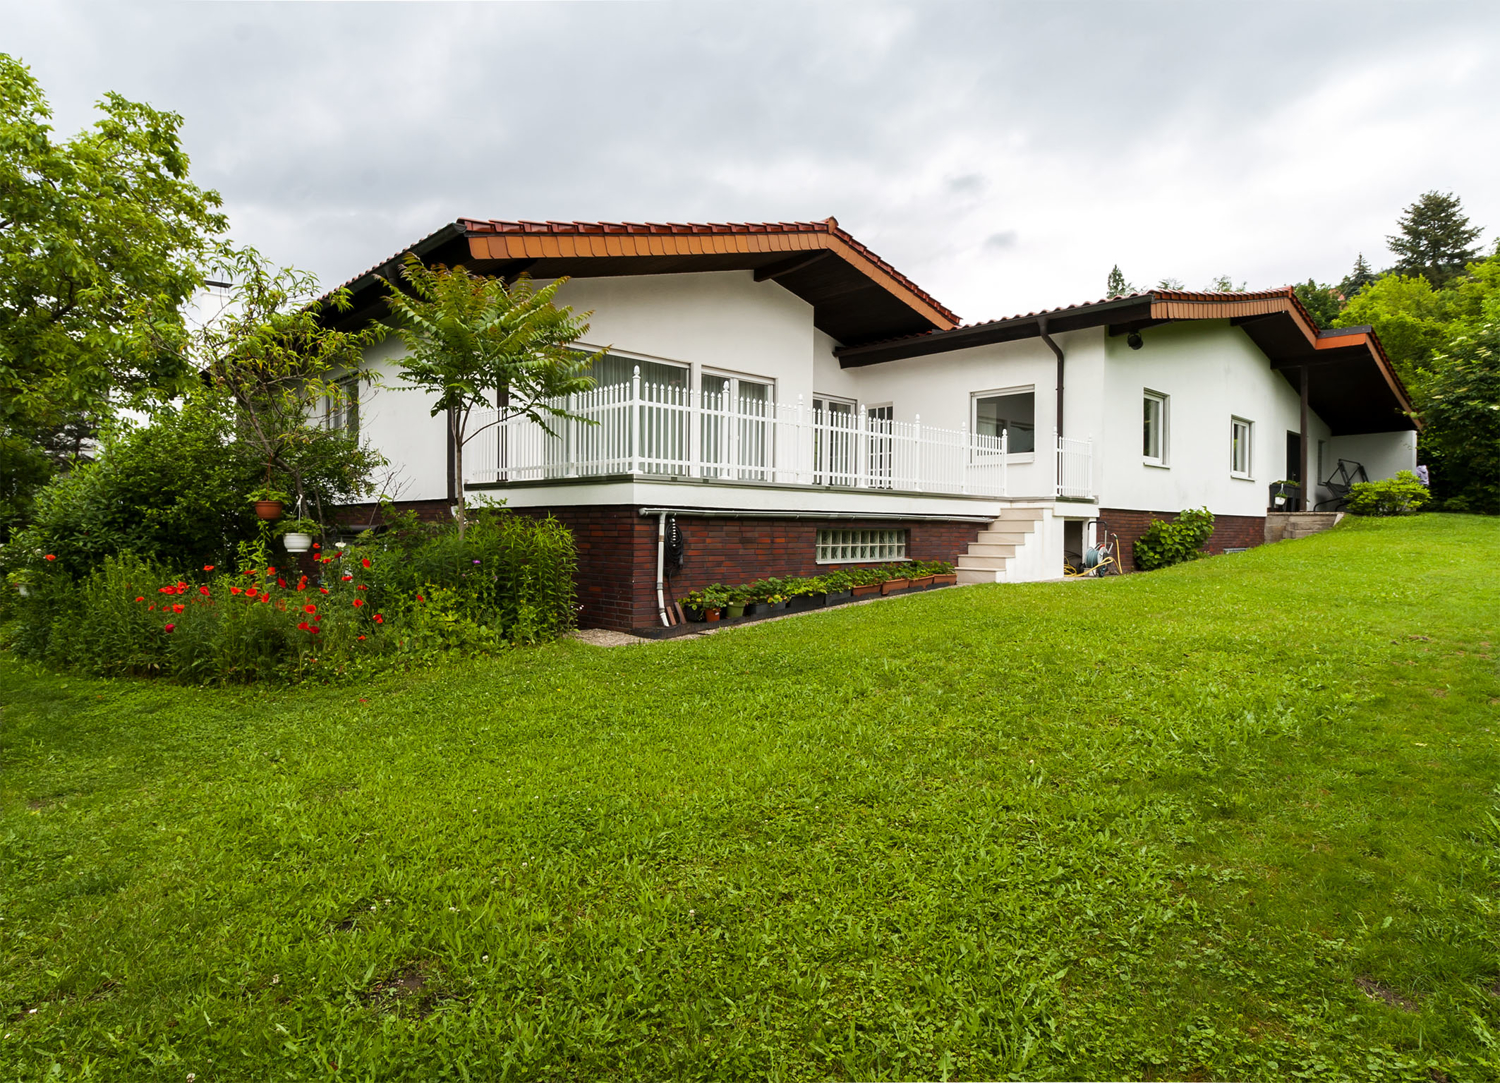 274 m² Wohnfläche in einem Einfamilienhaus mit Doppelgarage in schöner ruhiger Hanglage von Malchen